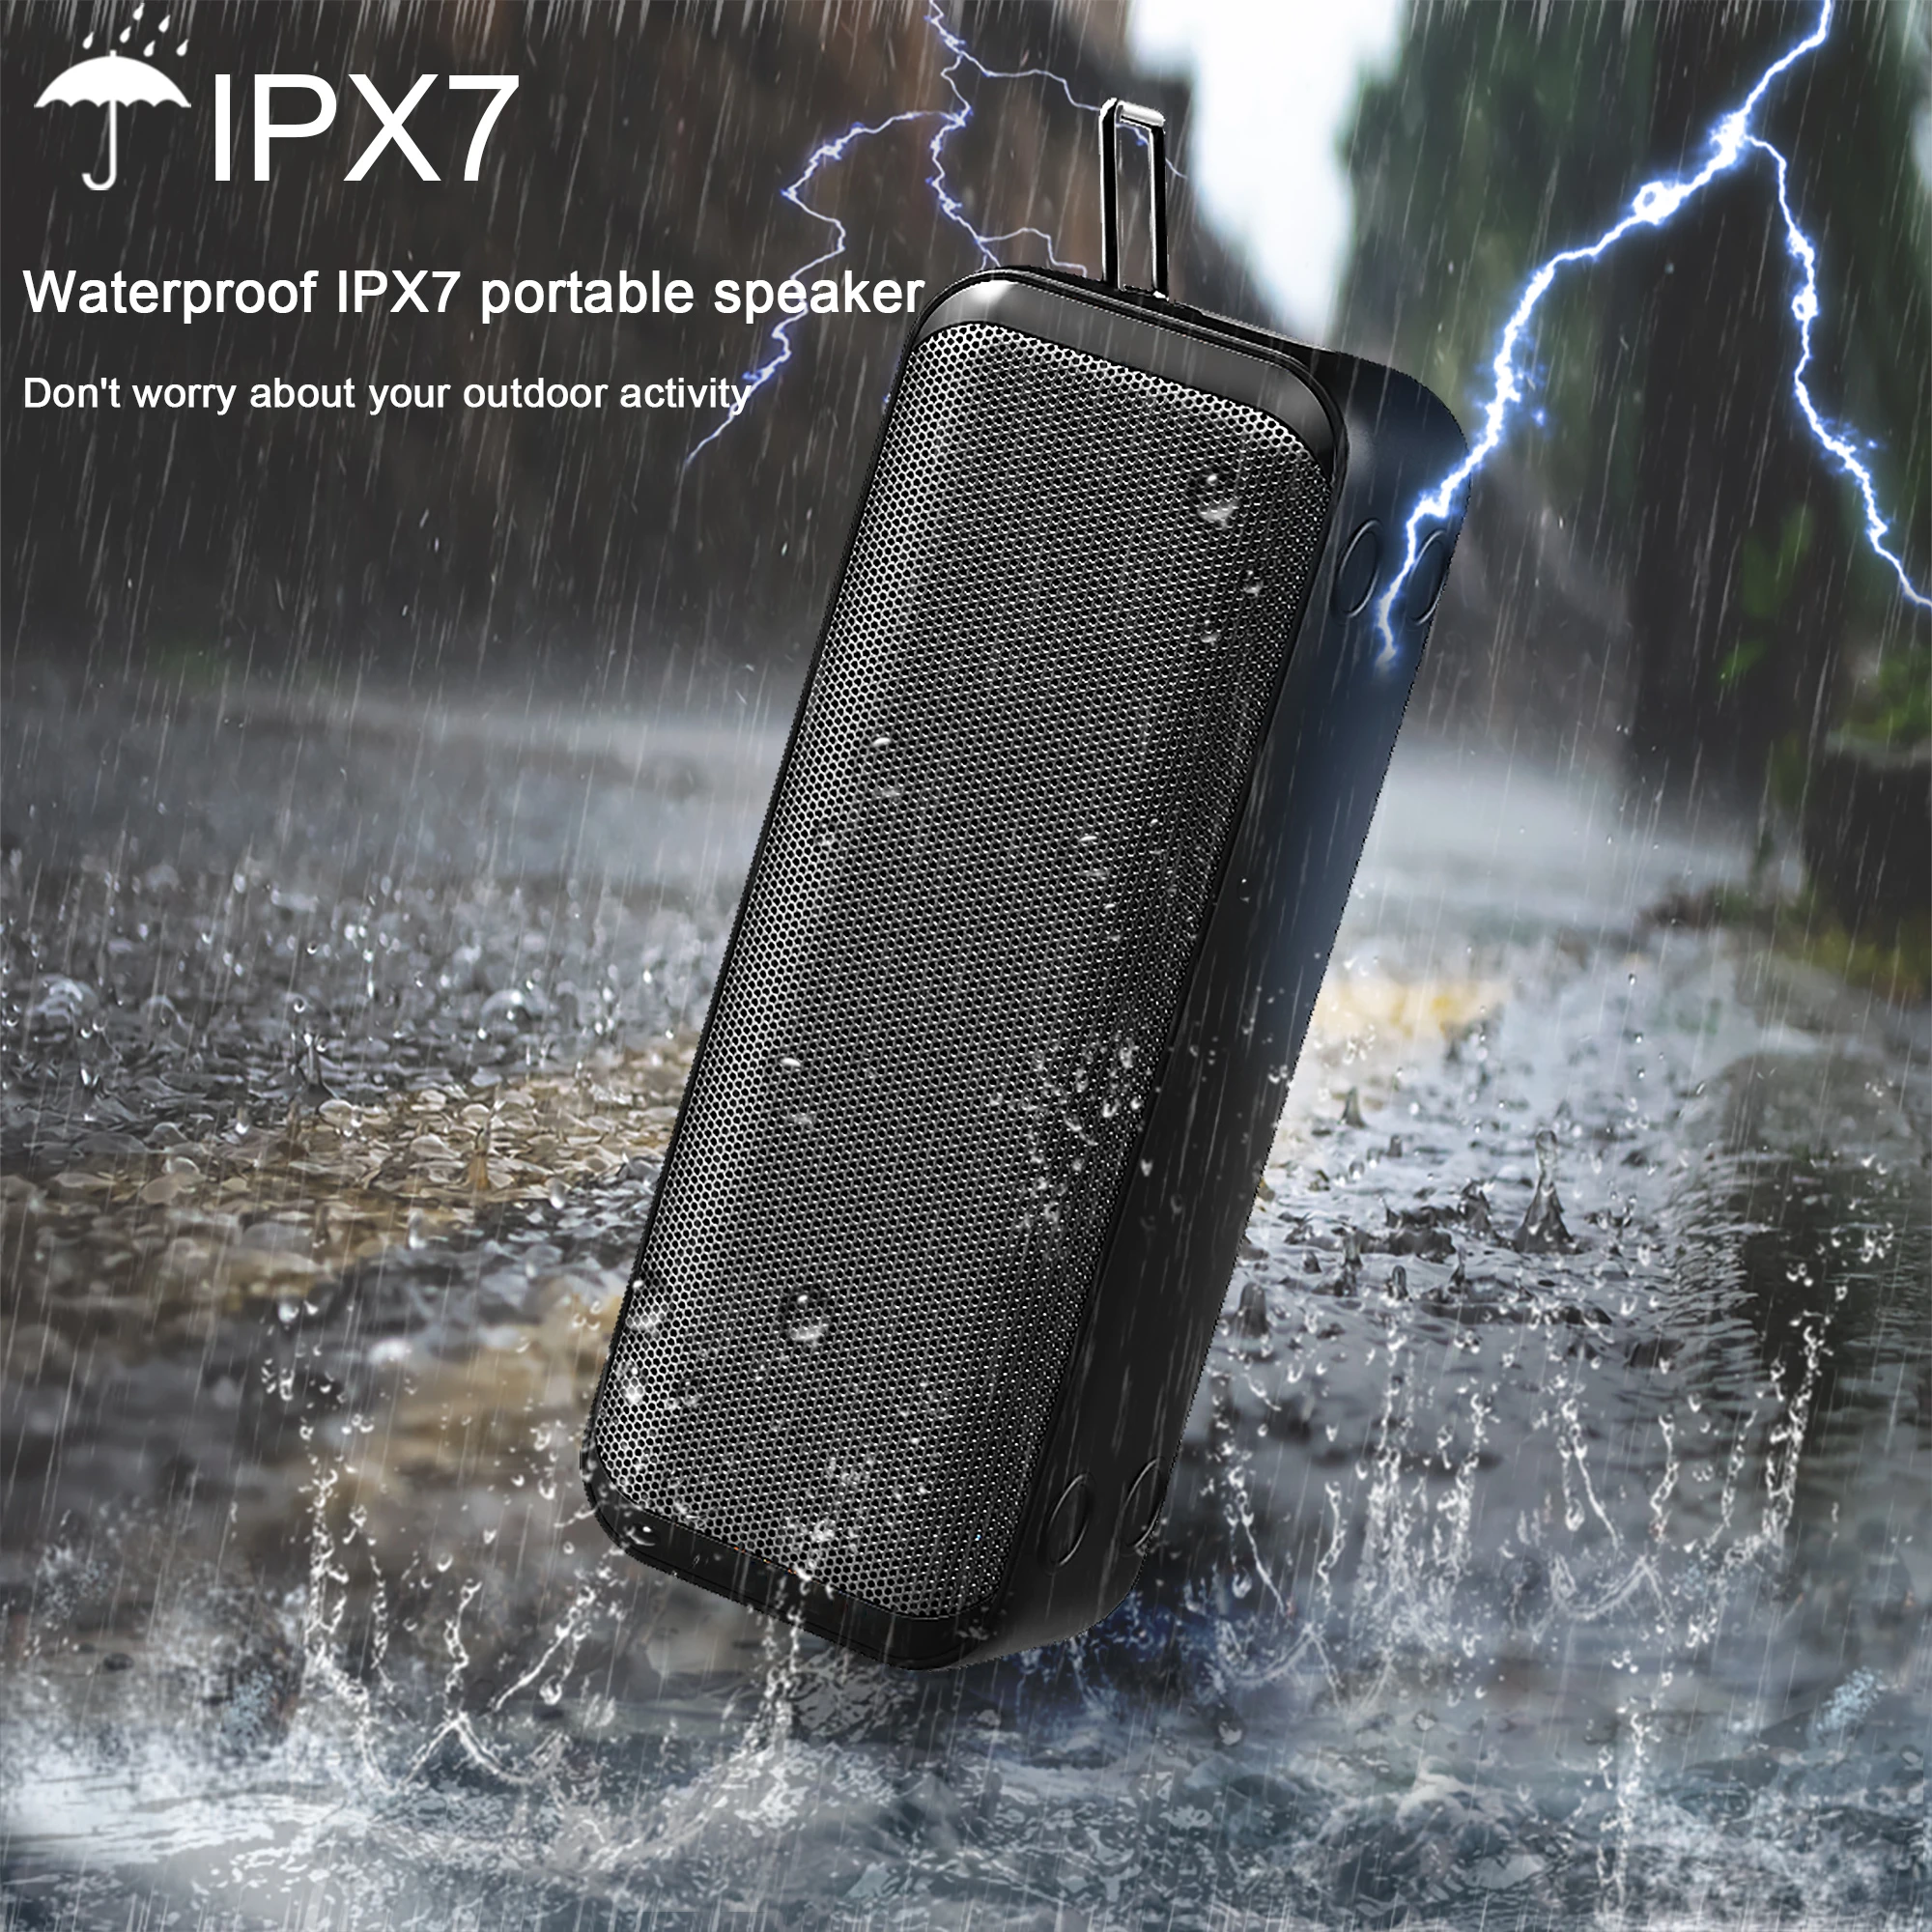 2021 10W oem home bt speaker wireless light loud outdoor portable ipx7 waterproof bathroom shower speaker bulk